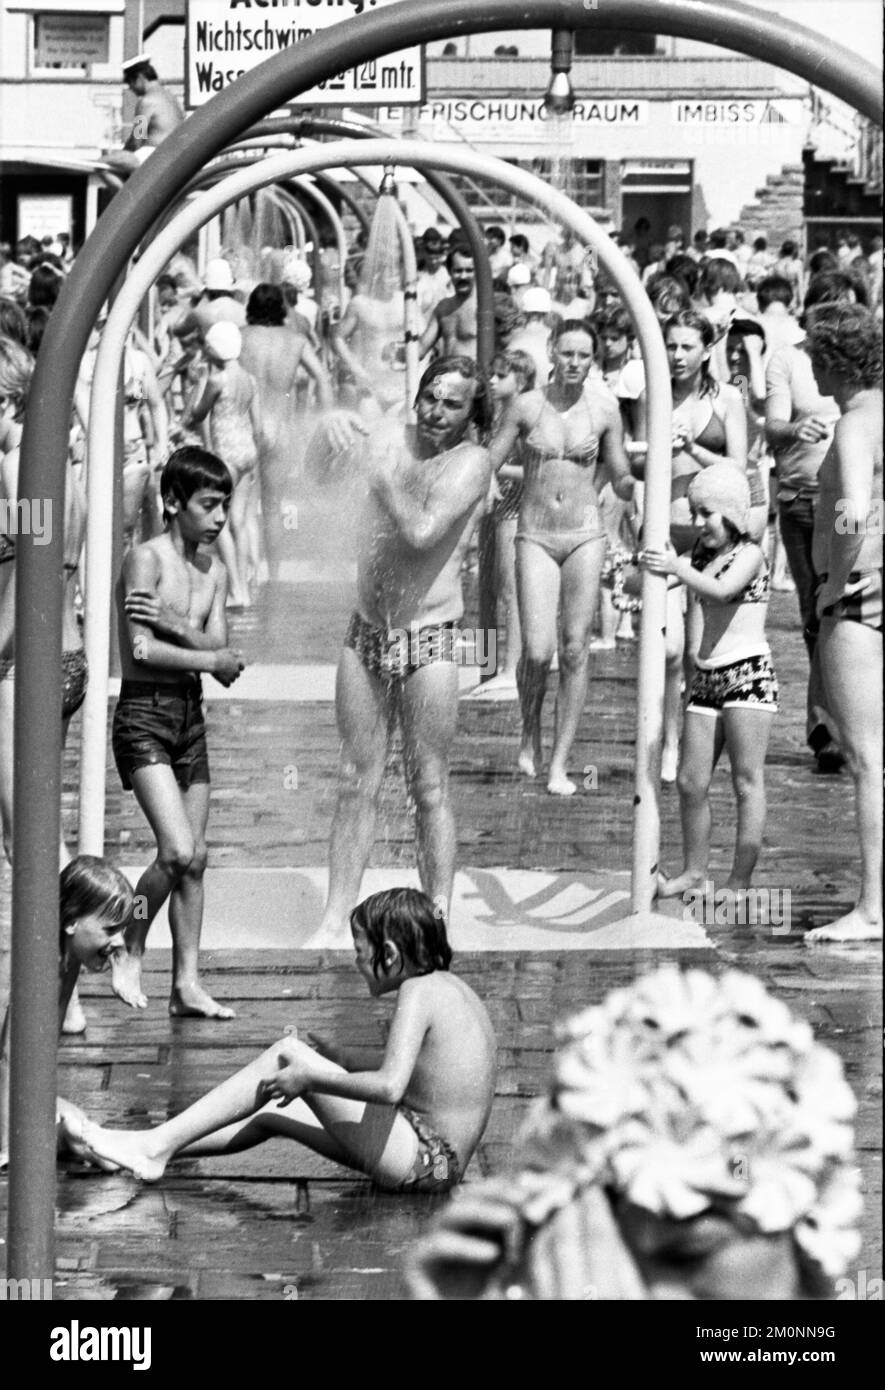 L'été 1976 a apporté beaucoup de soleil et de piscines complètes, comme ici le 25.6.1976 à Dortmund, Allemagne, Europe Banque D'Images